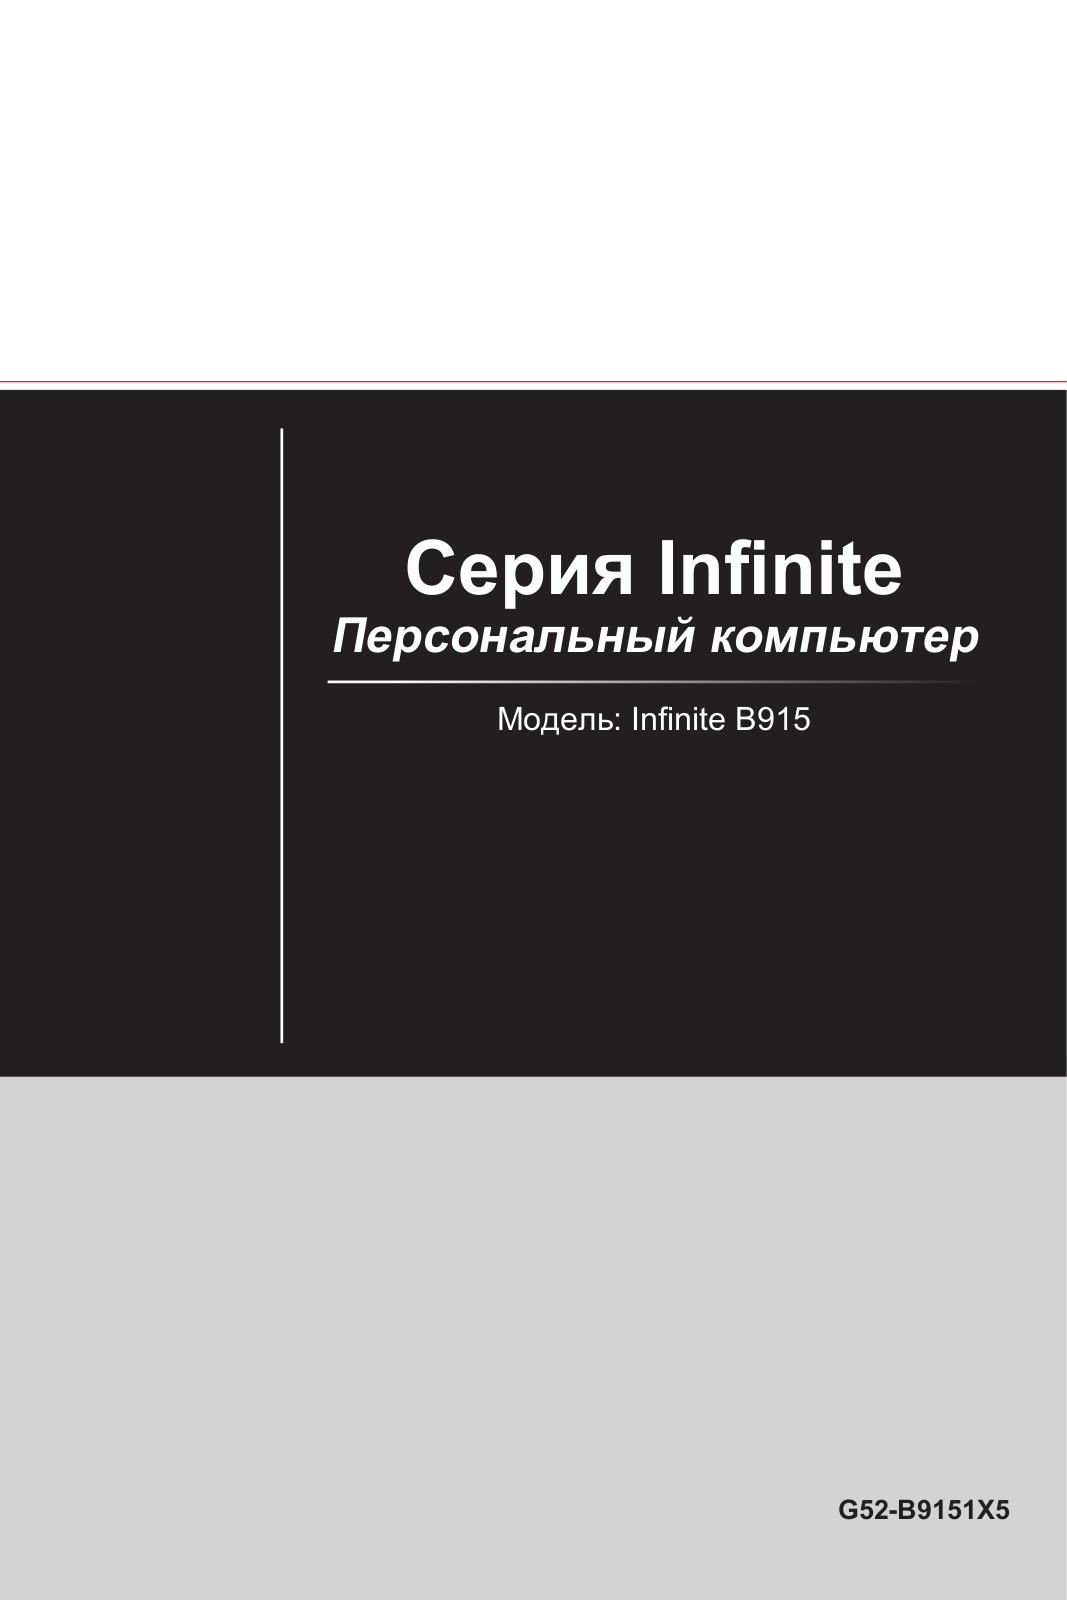 MSI Infinite User Manual